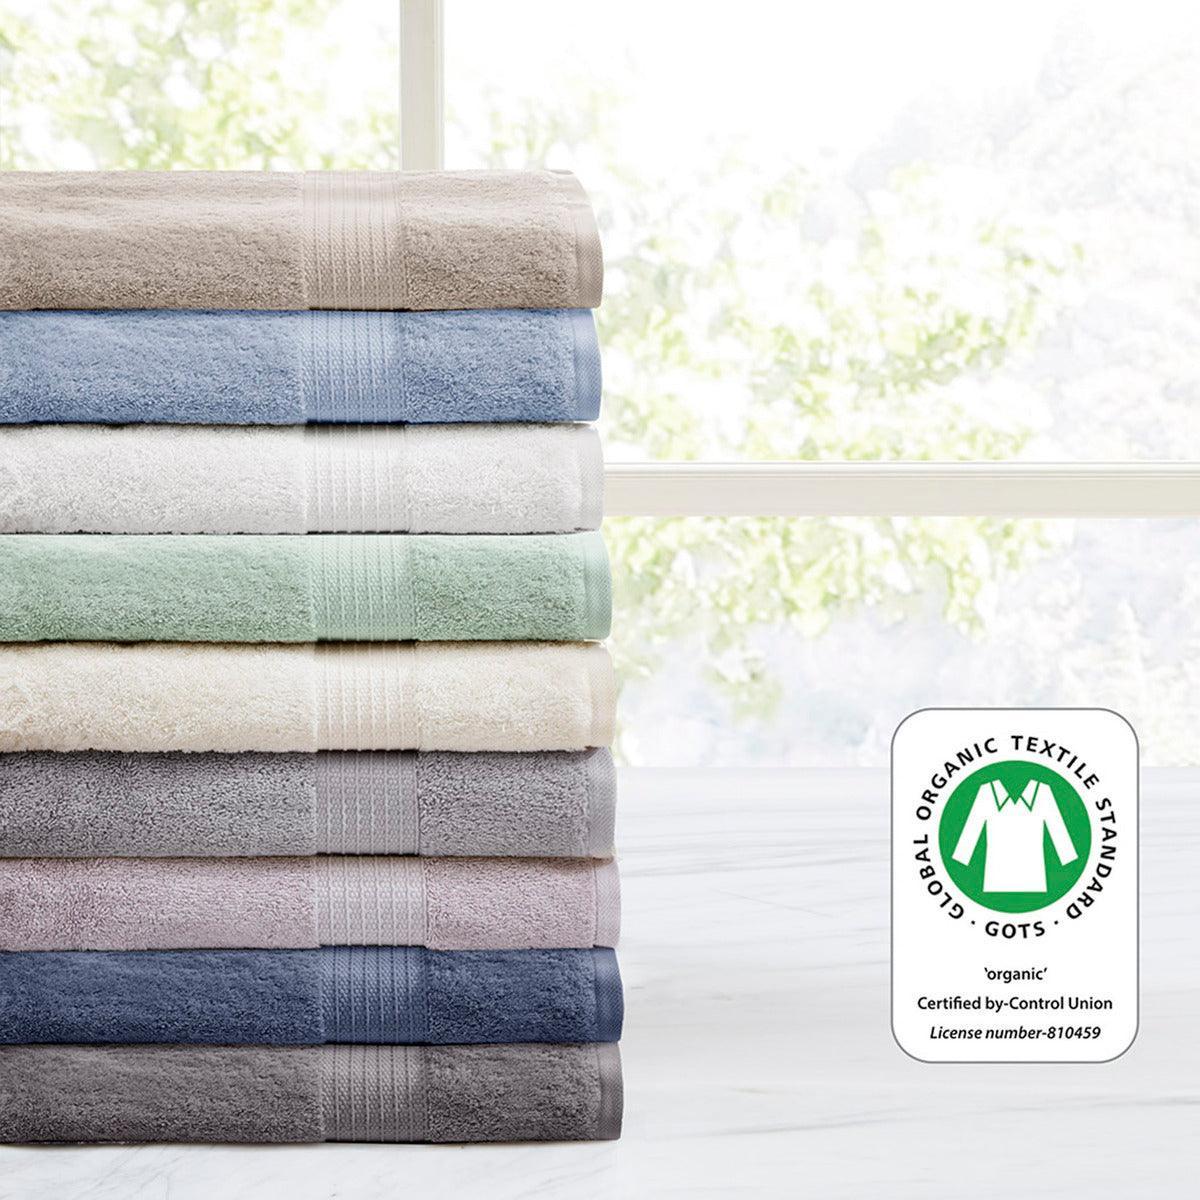 Olliix.com Bath Towels - Organic Bath Towel Tan